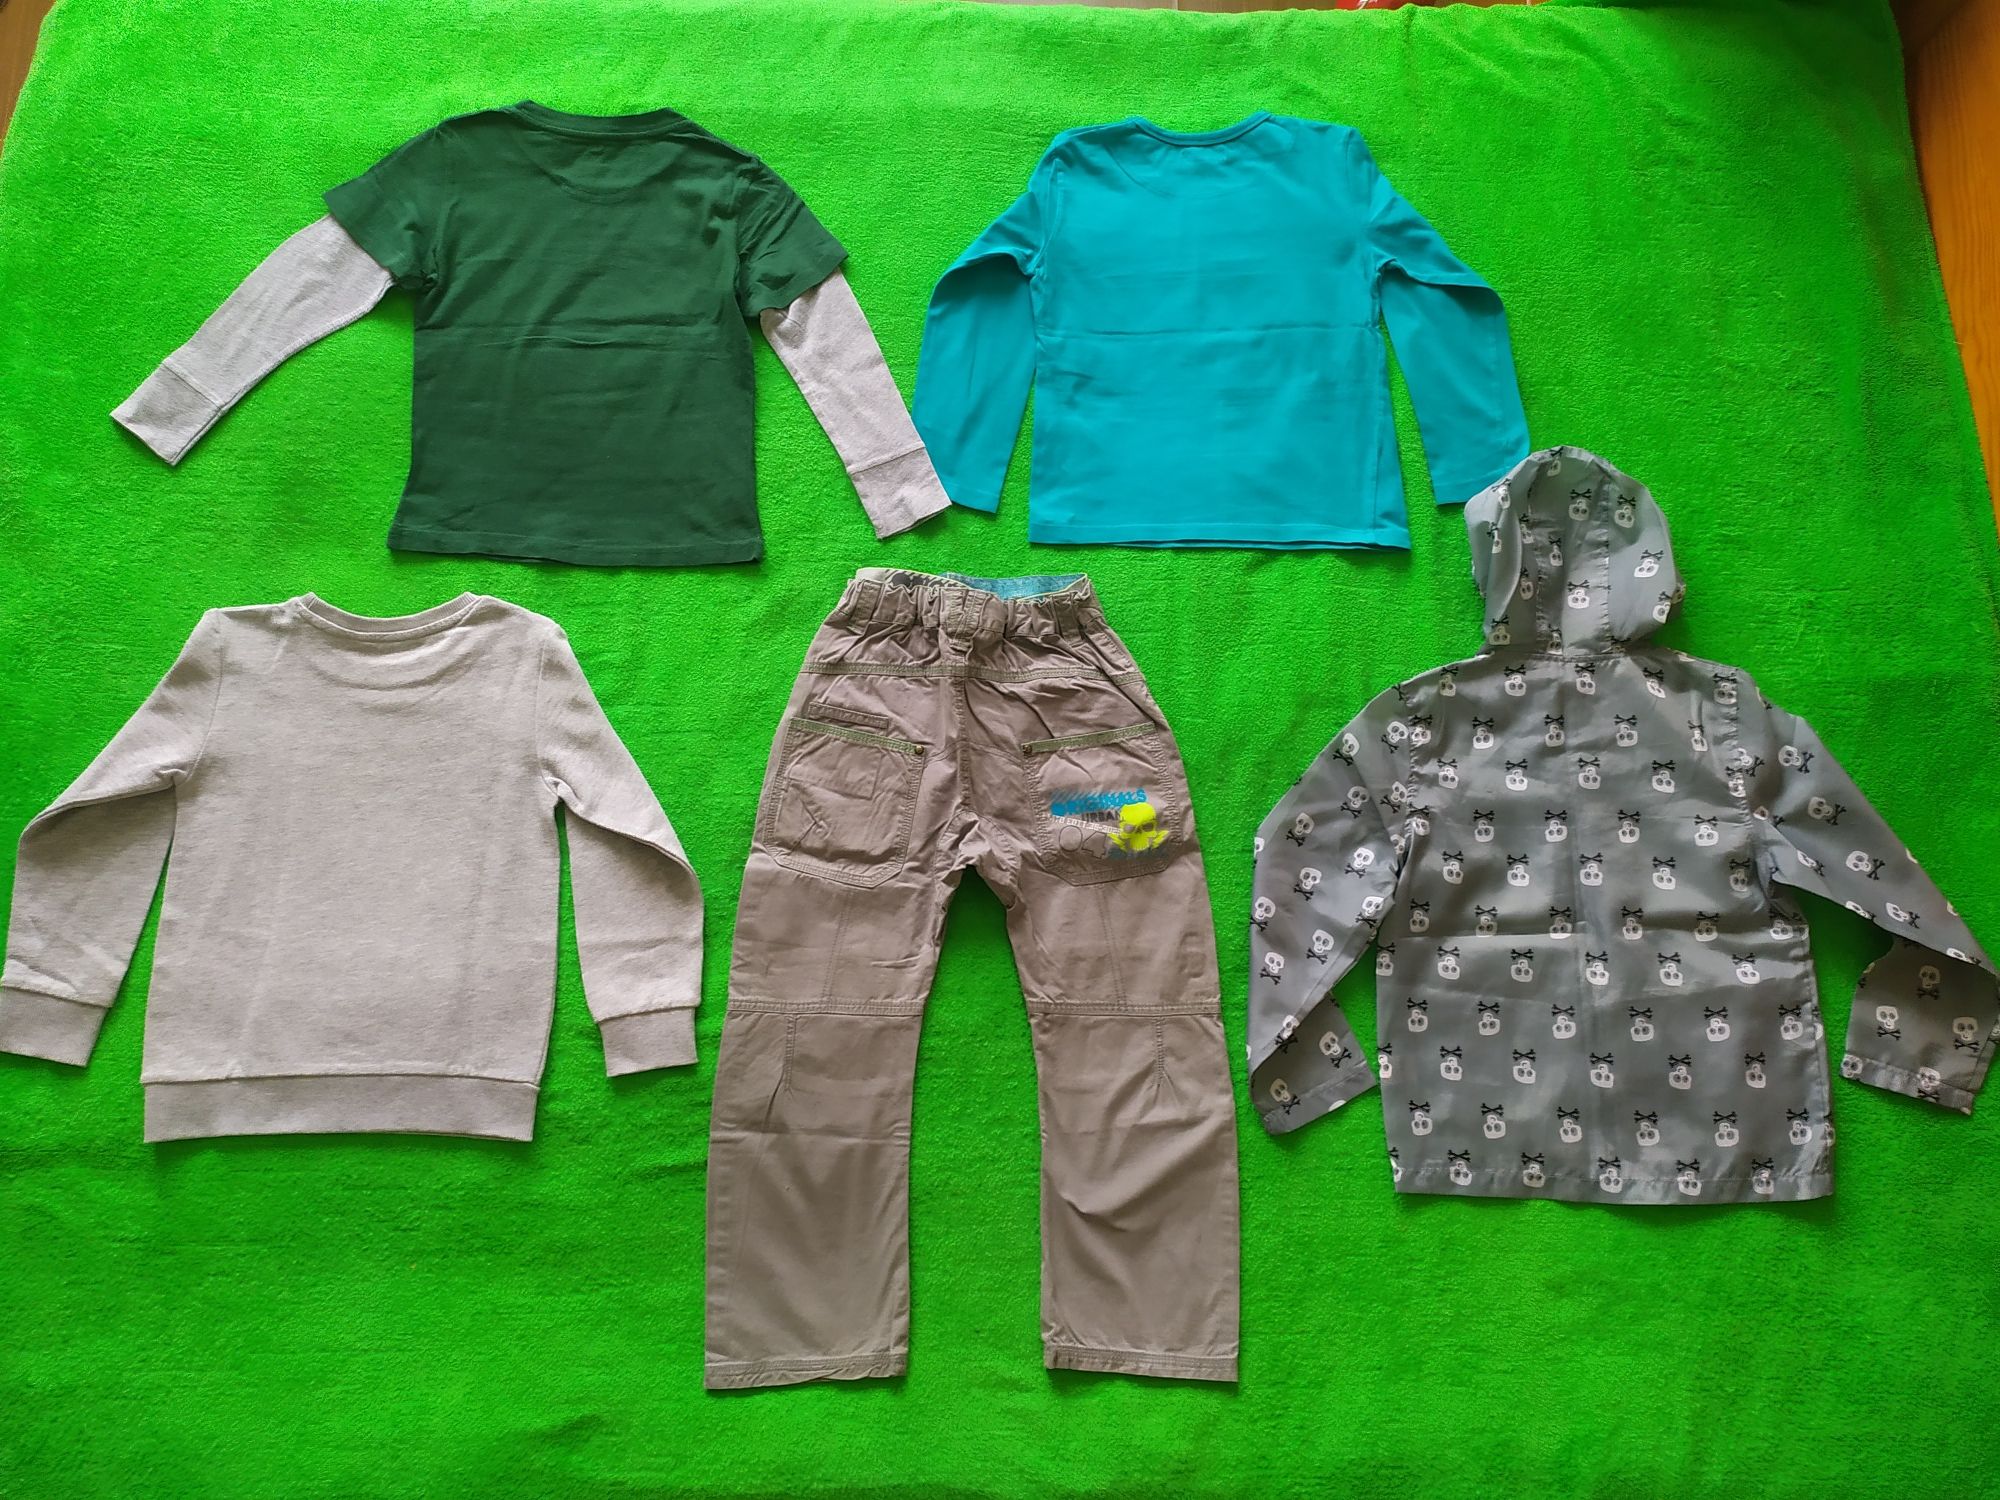 Рубашки, регланы, свитера, джинсы, шорты, майки Н&М Некст 6-8 л.